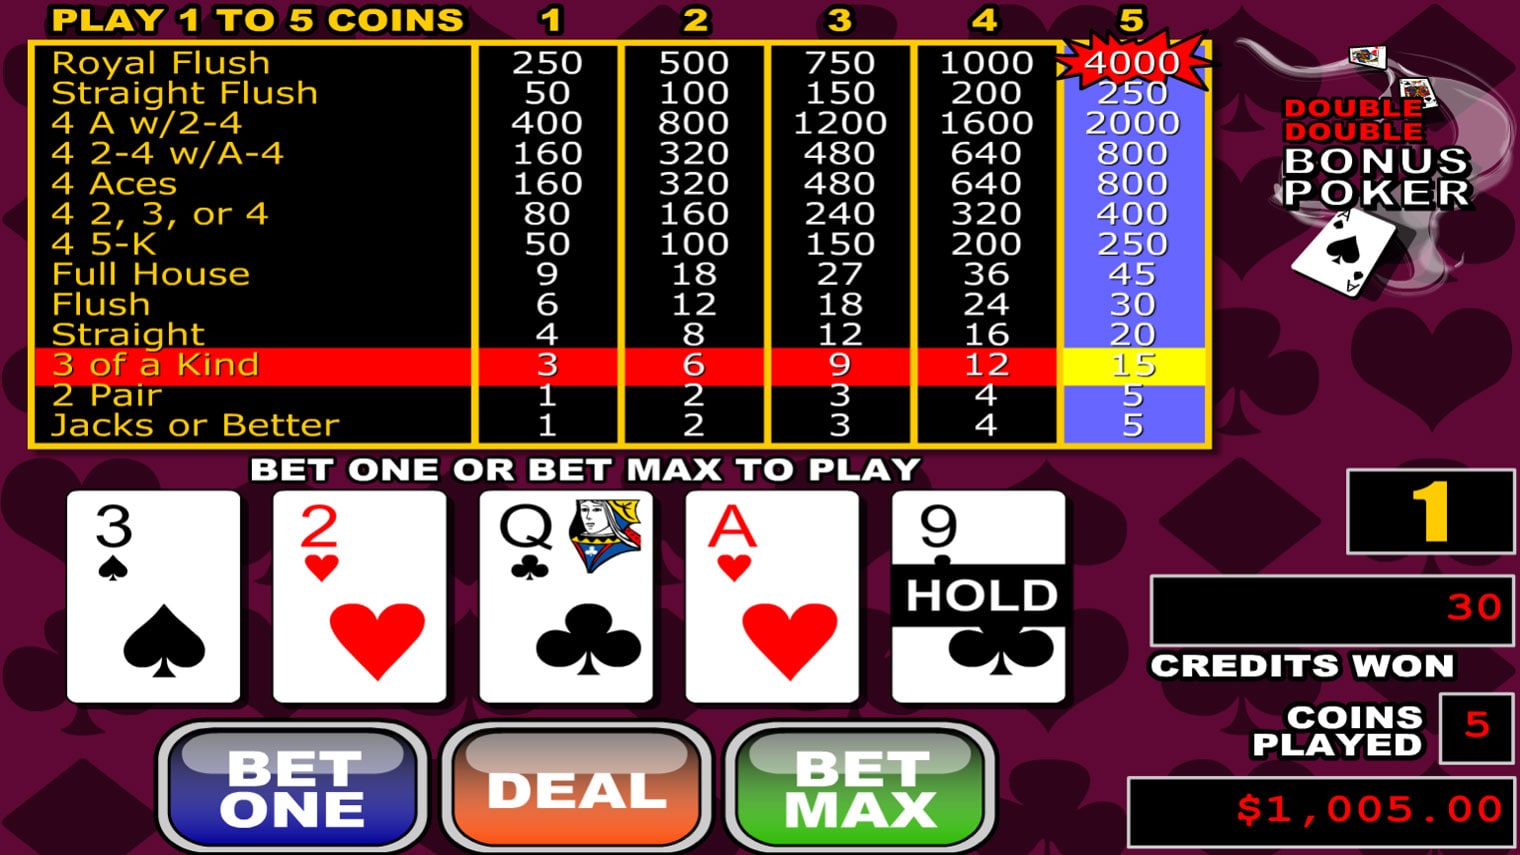 double double bonus poker screenshot